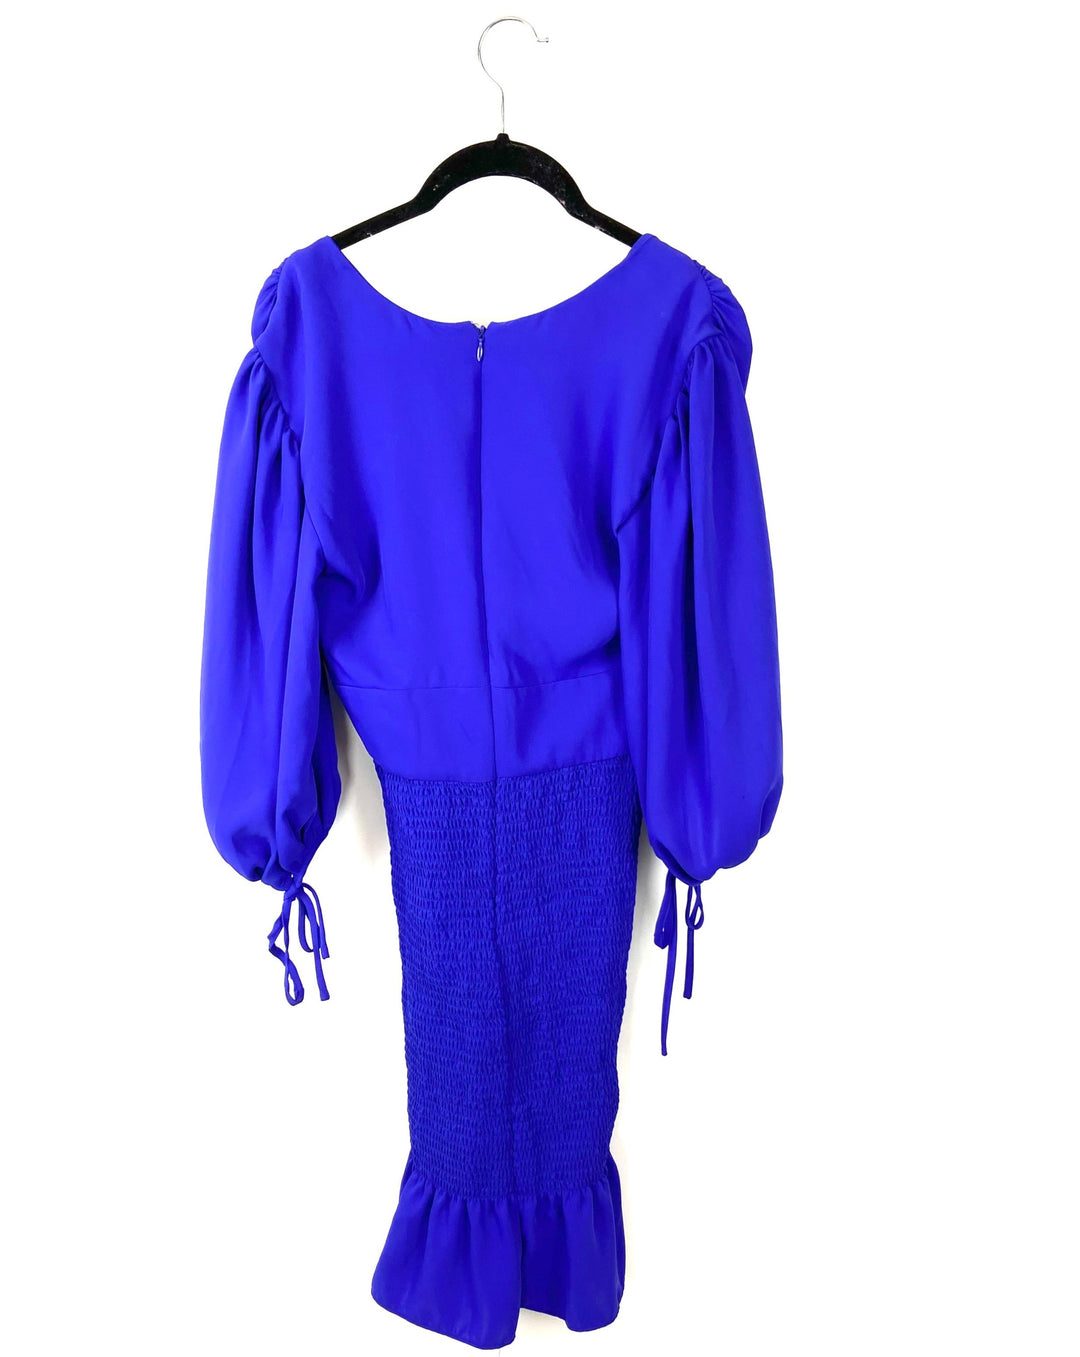 Purple V Neck Dress - Size Extra Small, Small and Medium